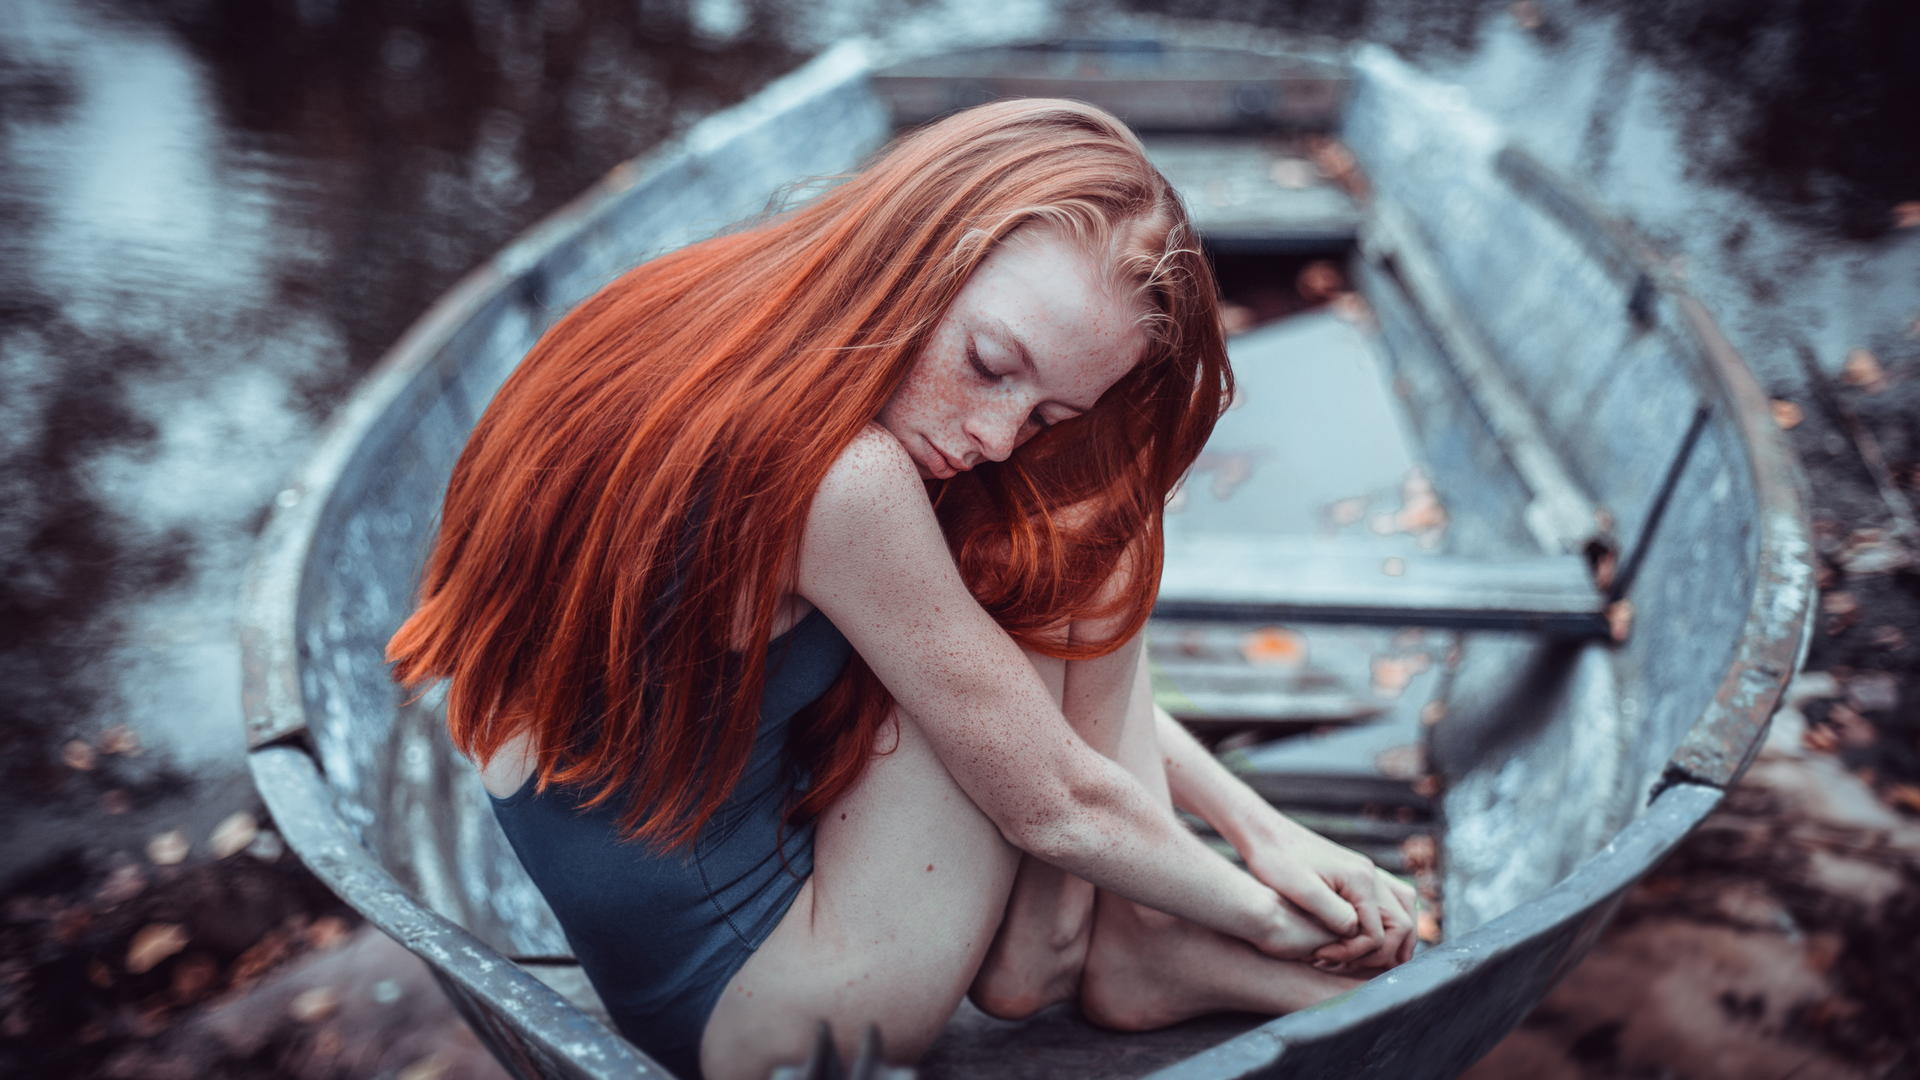 Фото рыжей девушки на реке